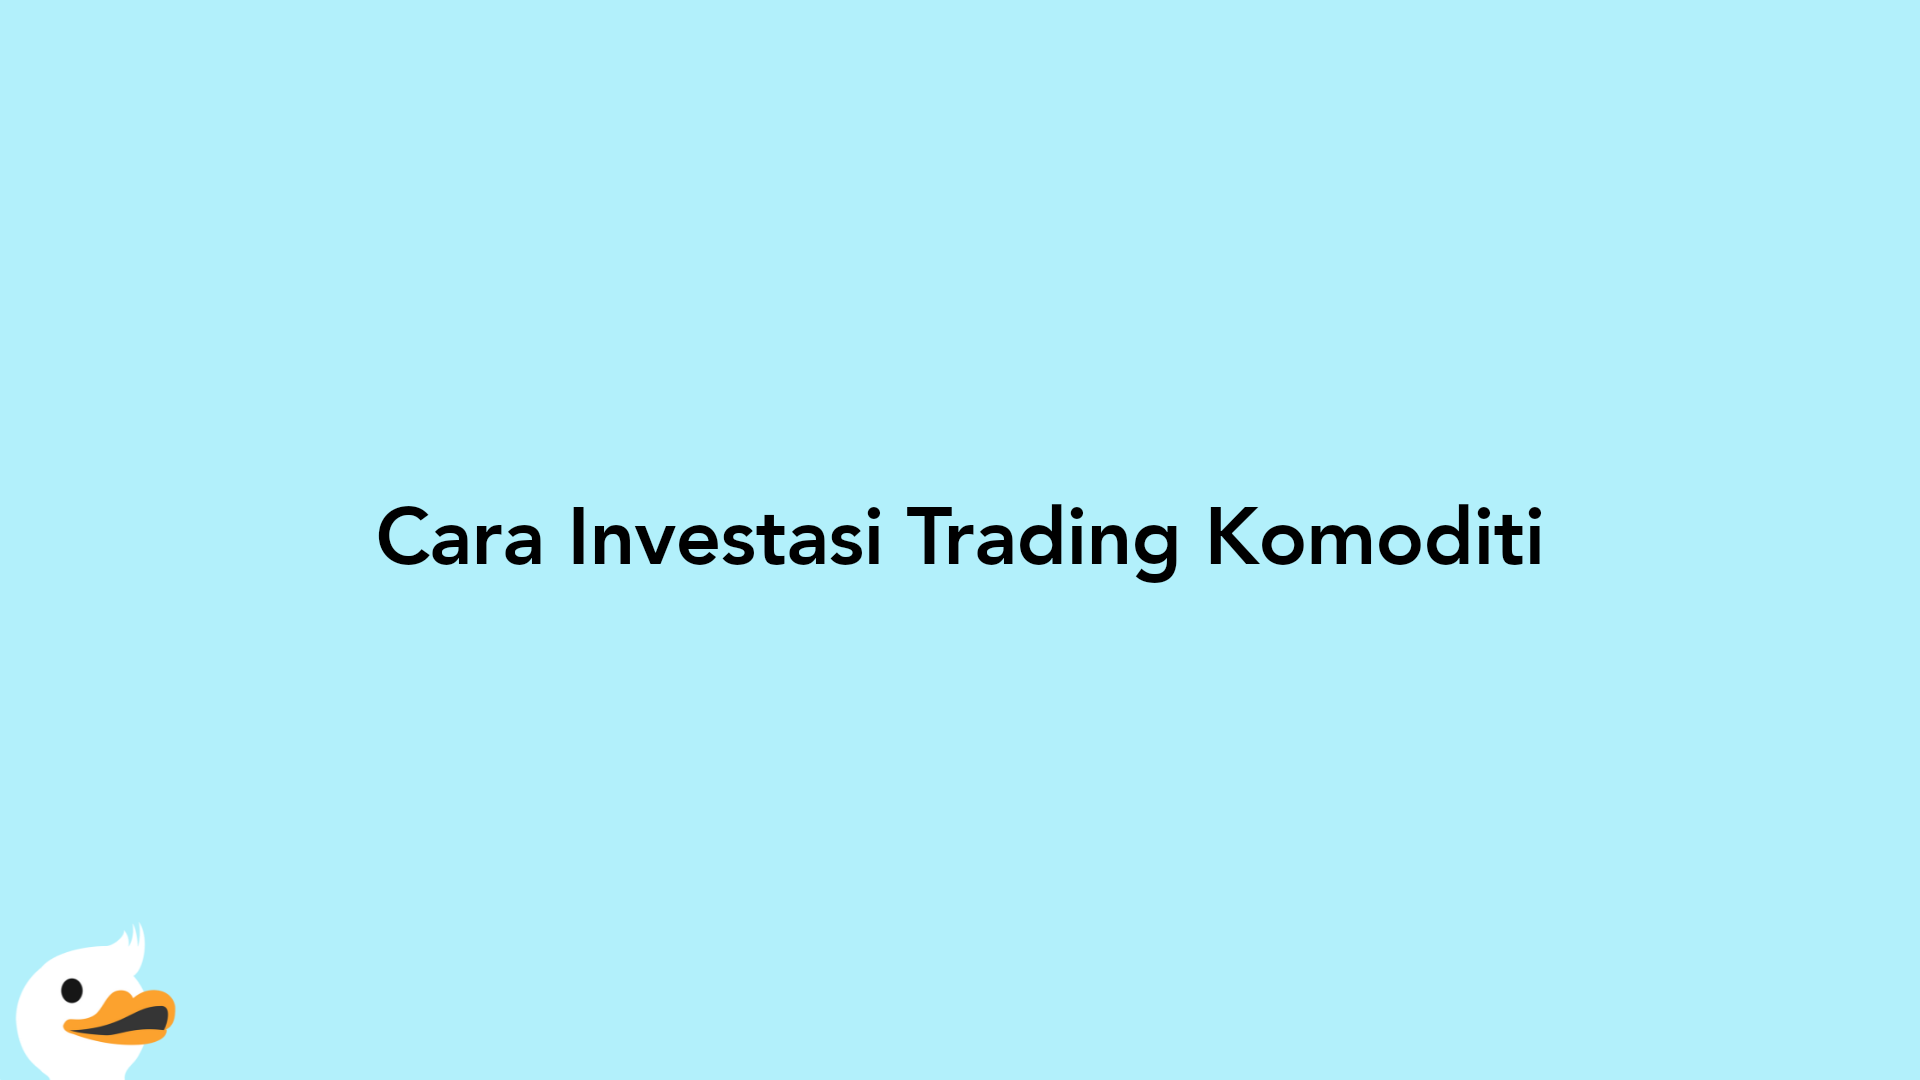 Cara Investasi Trading Komoditi